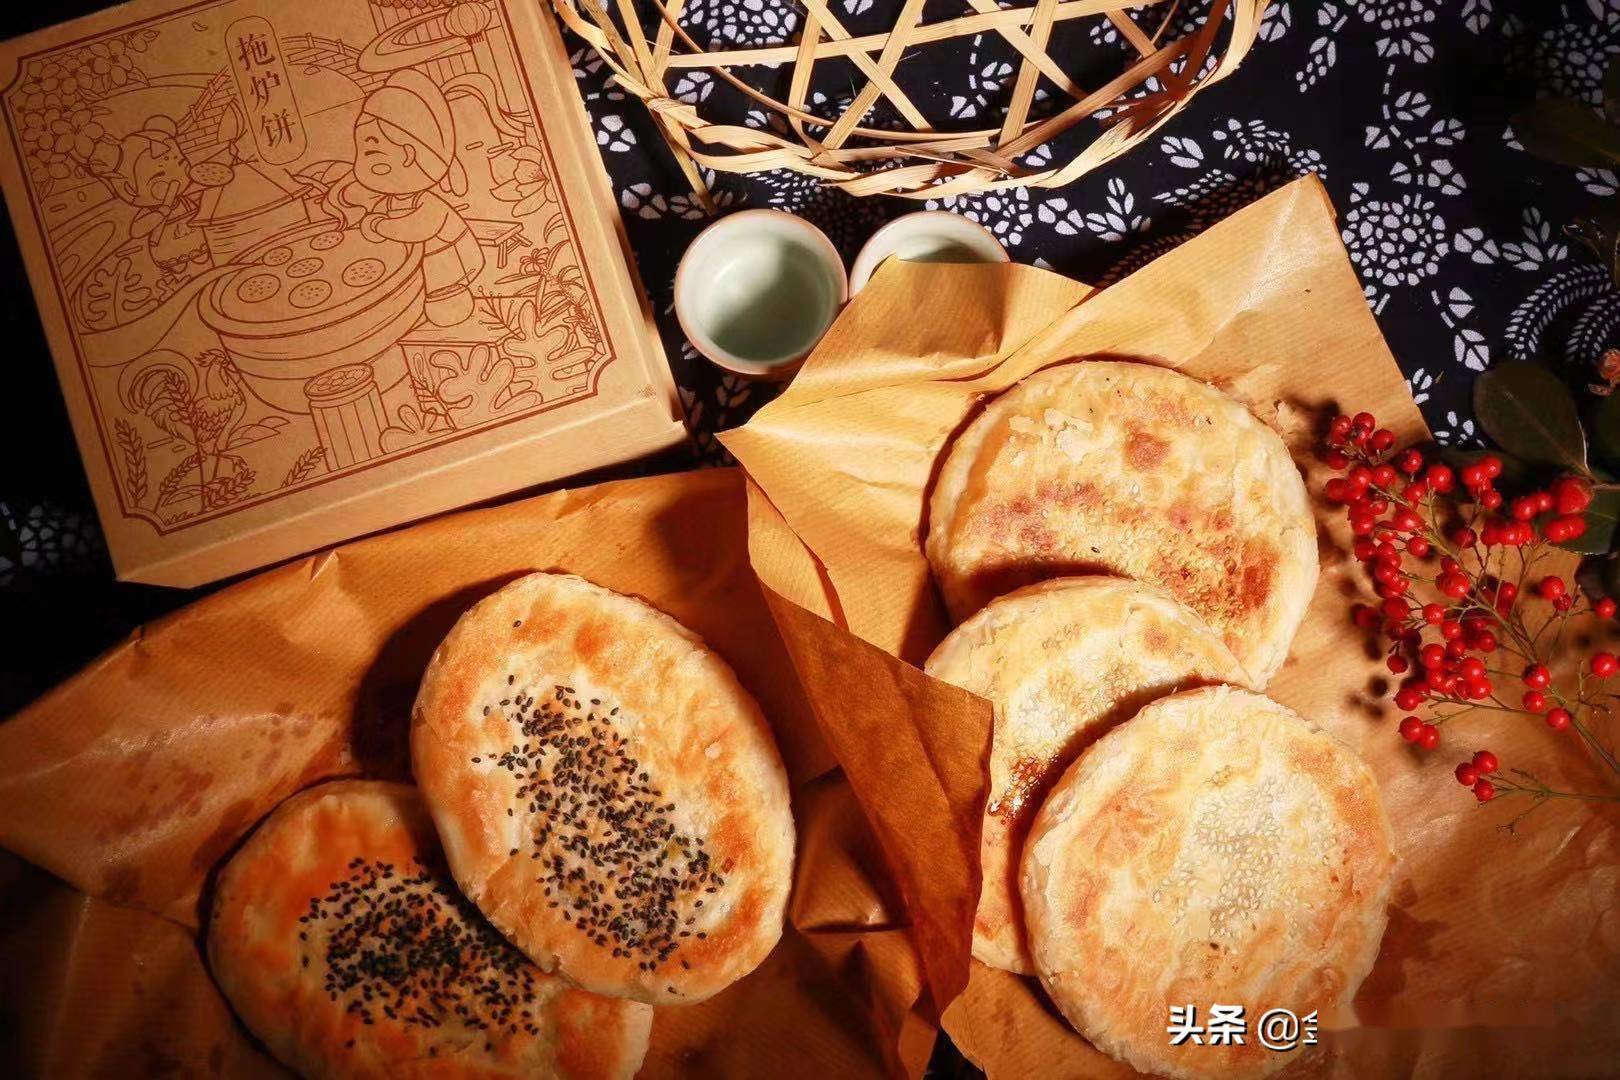 拖炉饼是张家港凤凰一带的风味小吃,面团里包裹着荠菜,猪油,白糖,清香